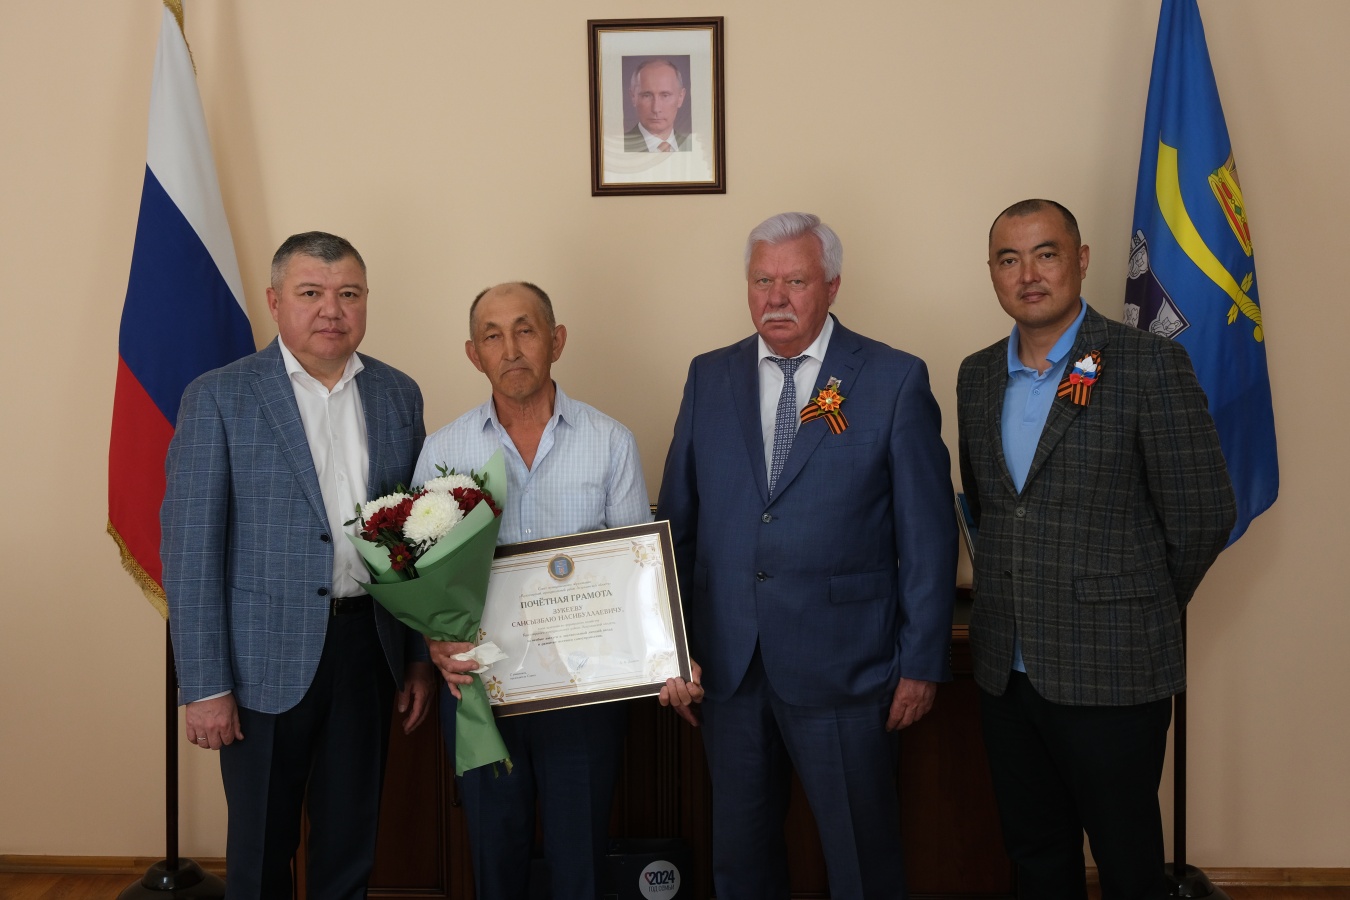 Красноярского фермера поздравили с юбилейным днем рождения